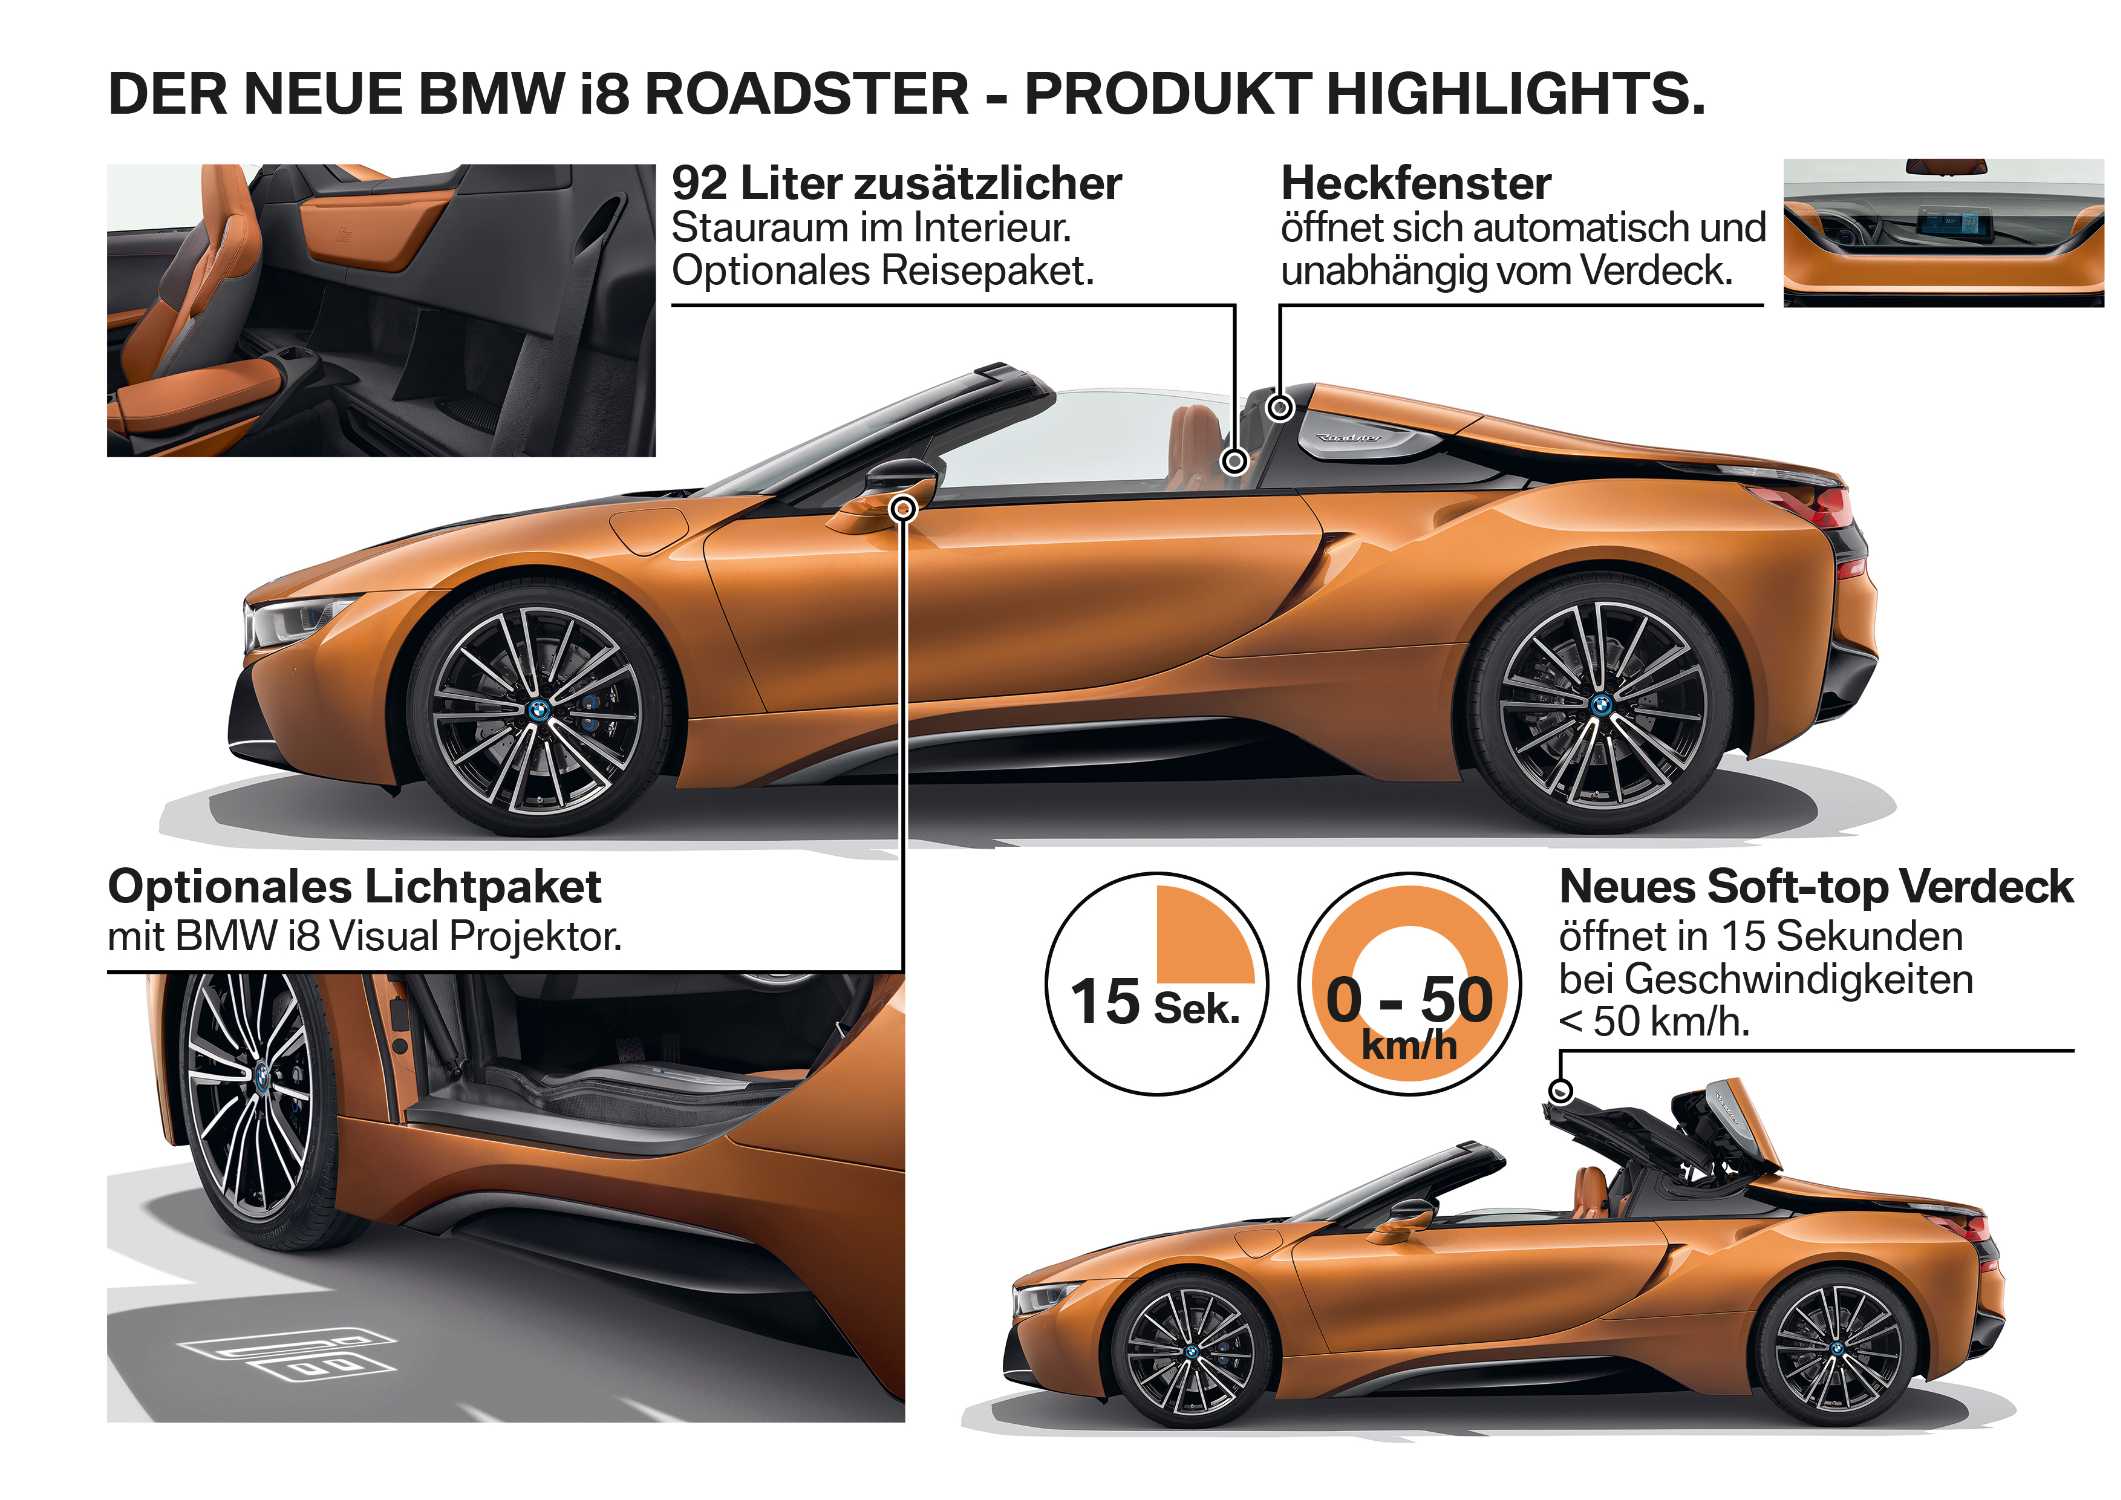 Der neue BMW i8 Roadster - Produkt Highlights. (11/2017)